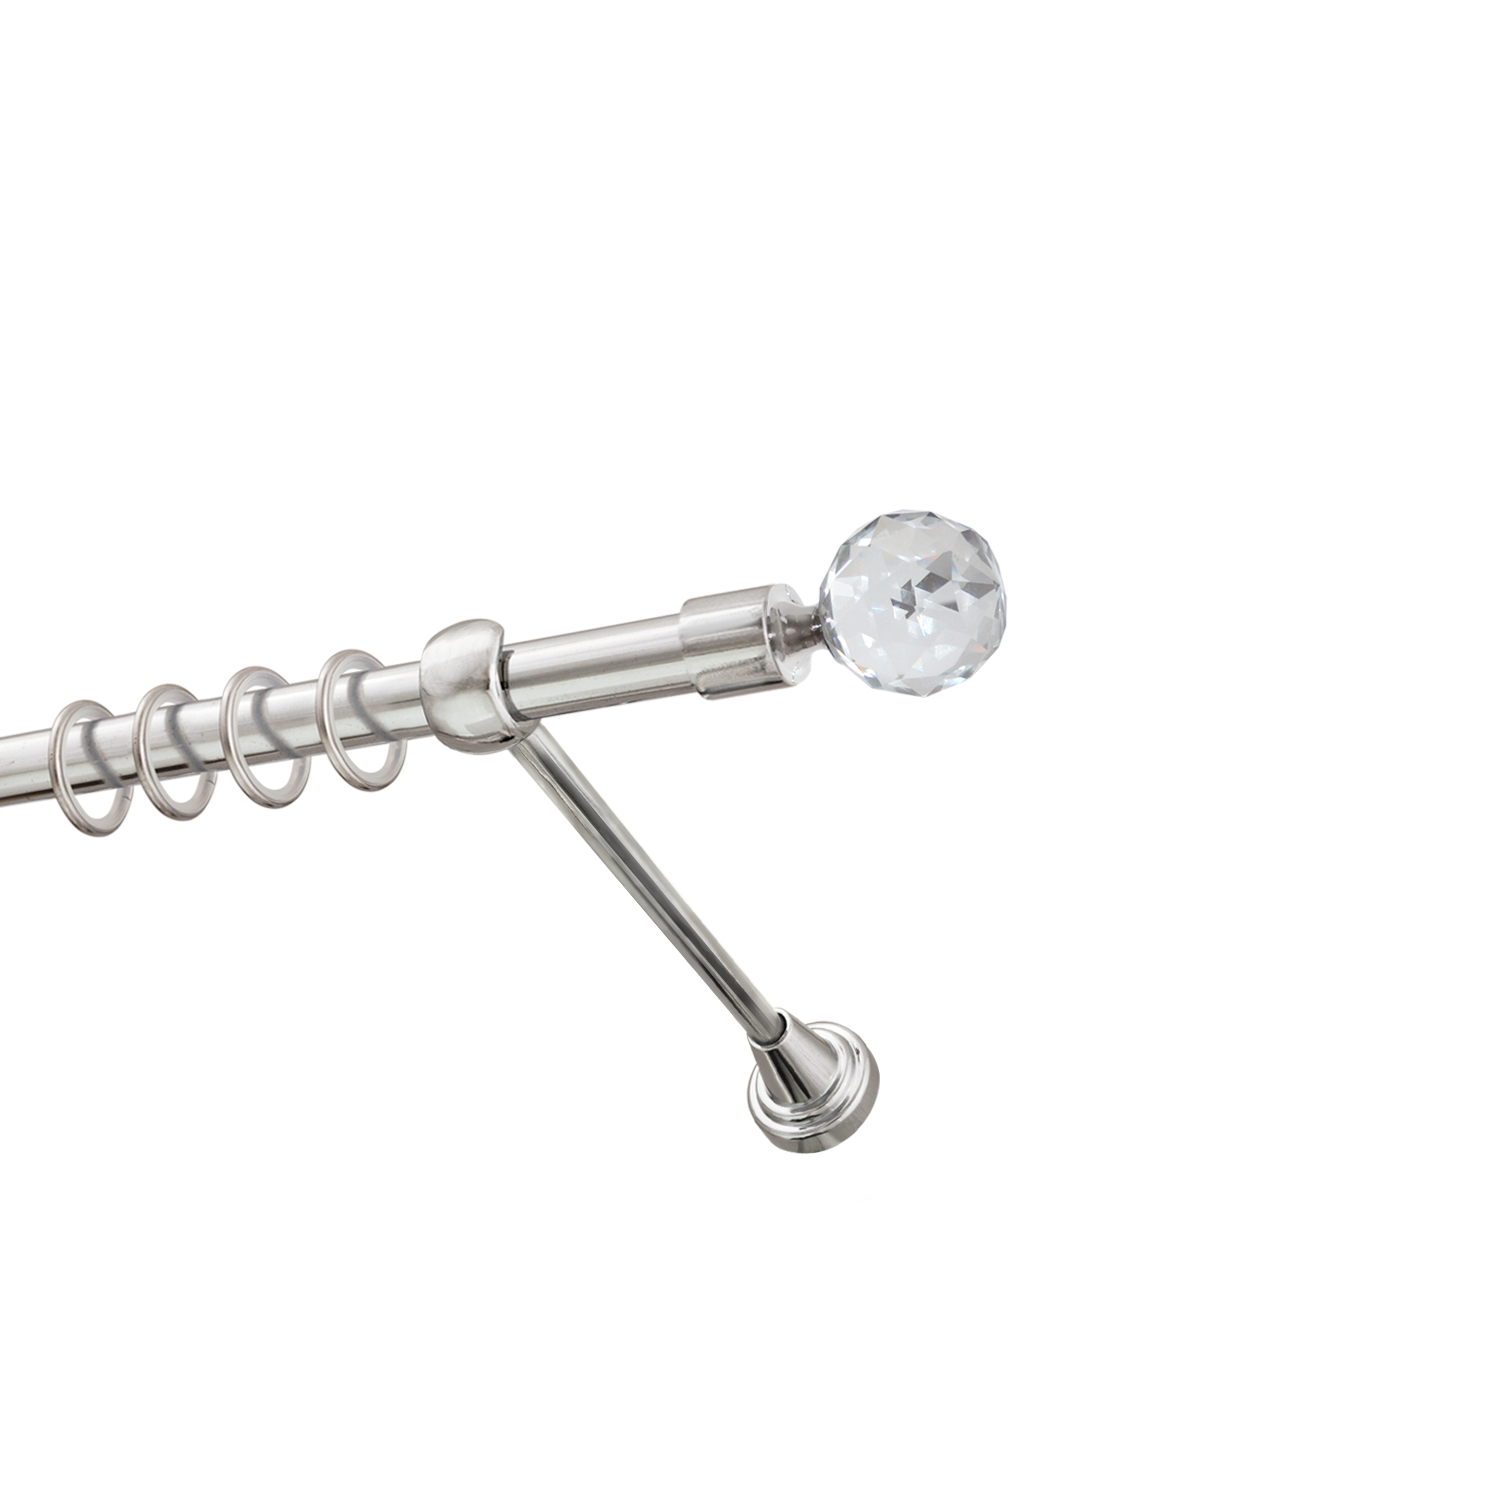 Металлический карниз для штор Карат, однорядный 16 мм, серебро, гладкая штанга, длина 200 см - фото Wikidecor.ru